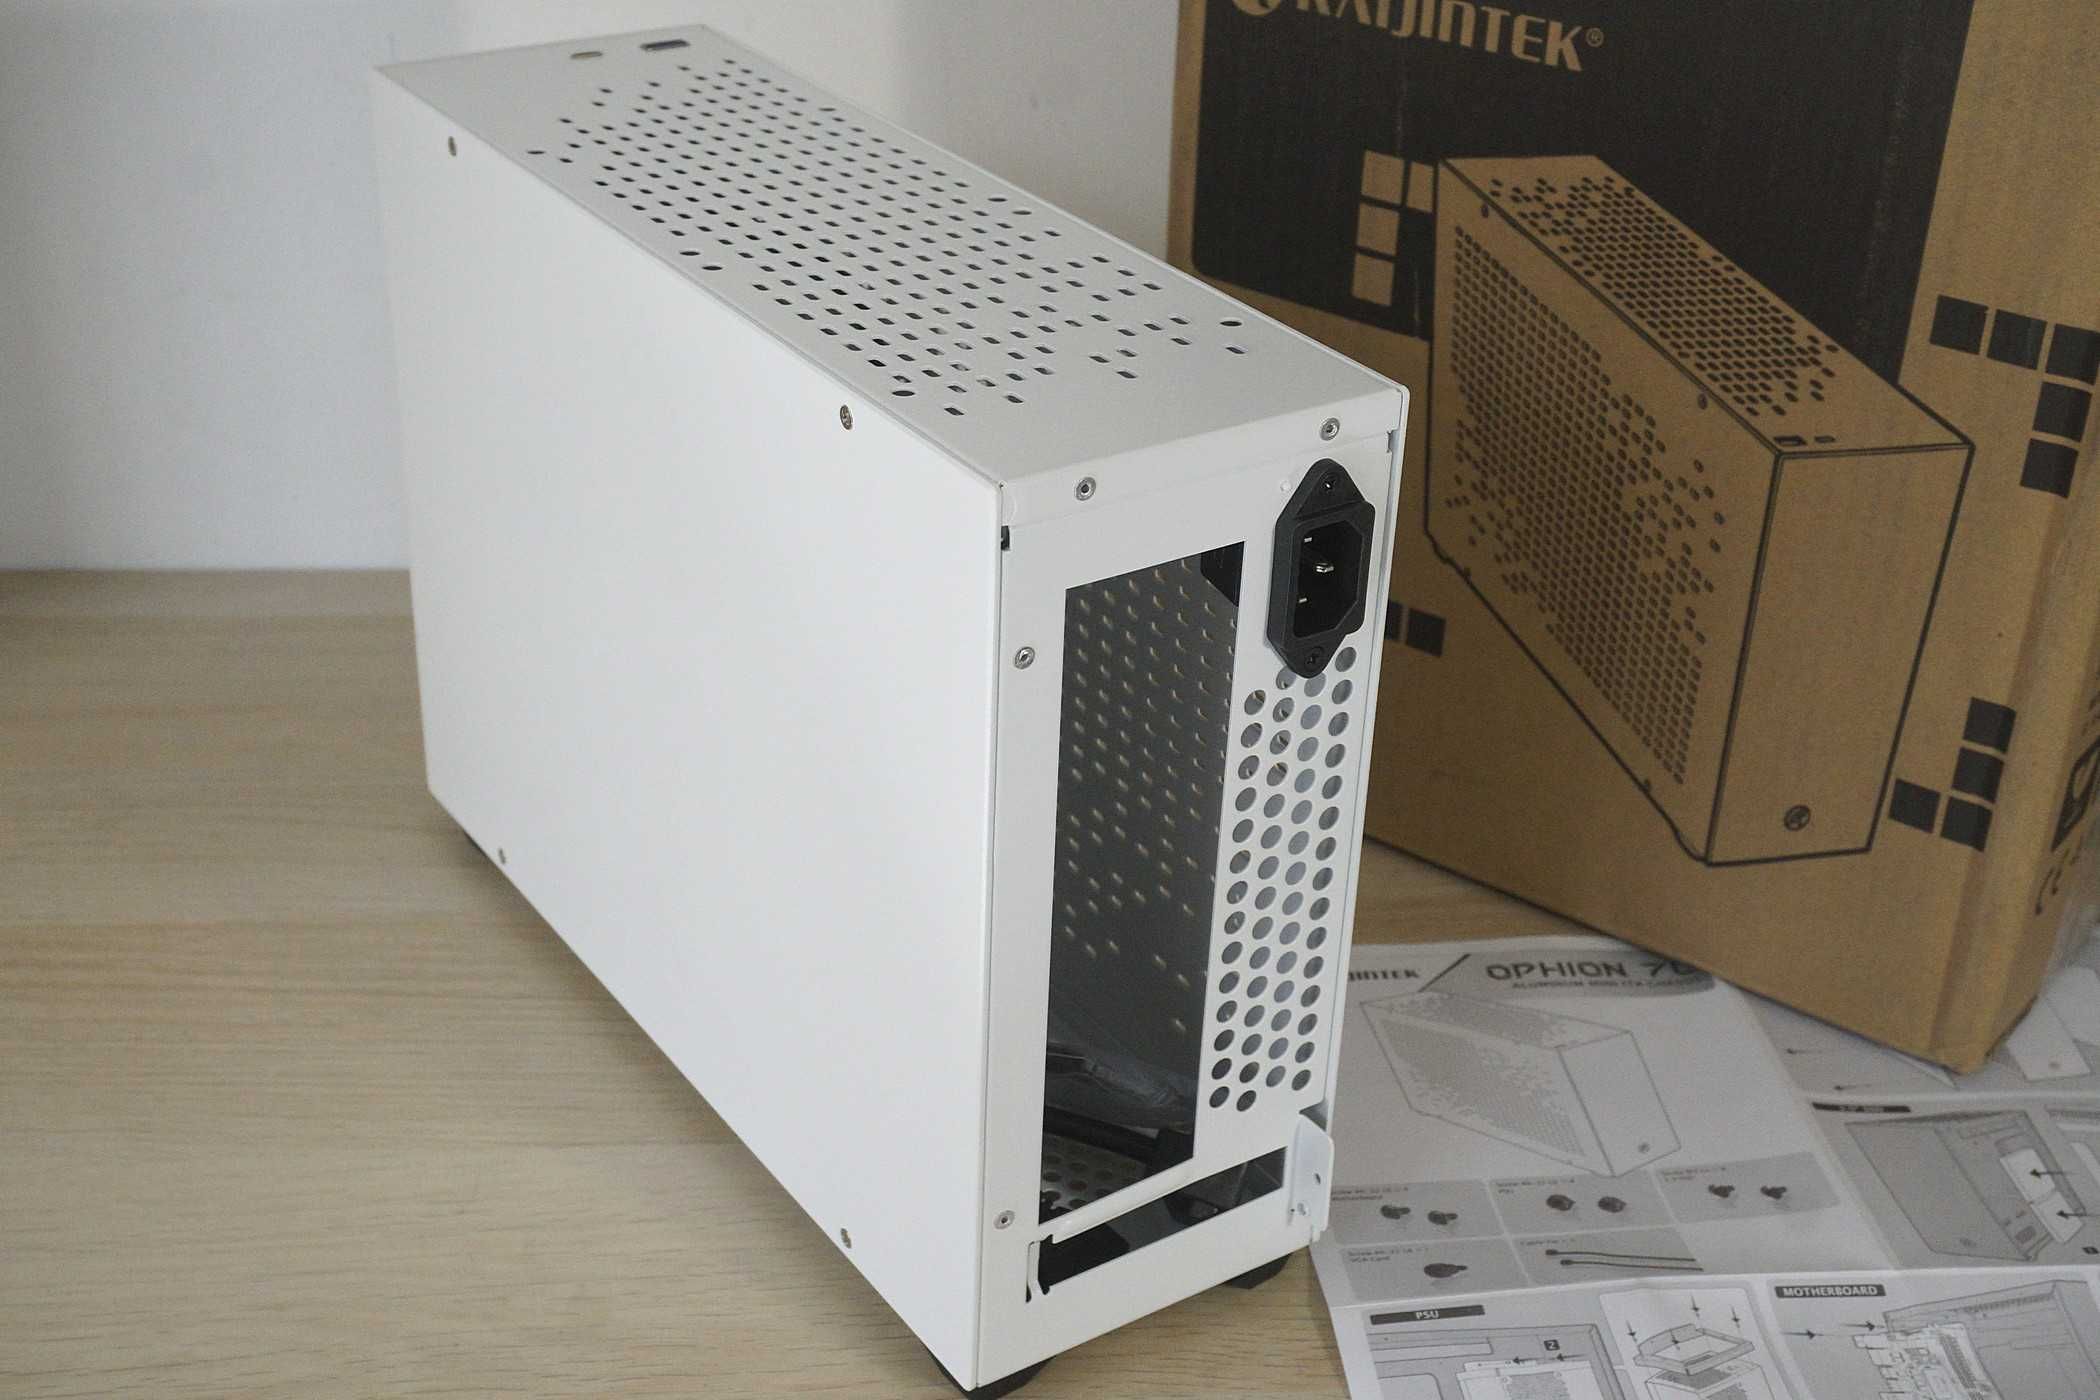 [нова отворена] Mini ITX Кутия Raijintek Ophion 7L бяла (вкл ДДС)